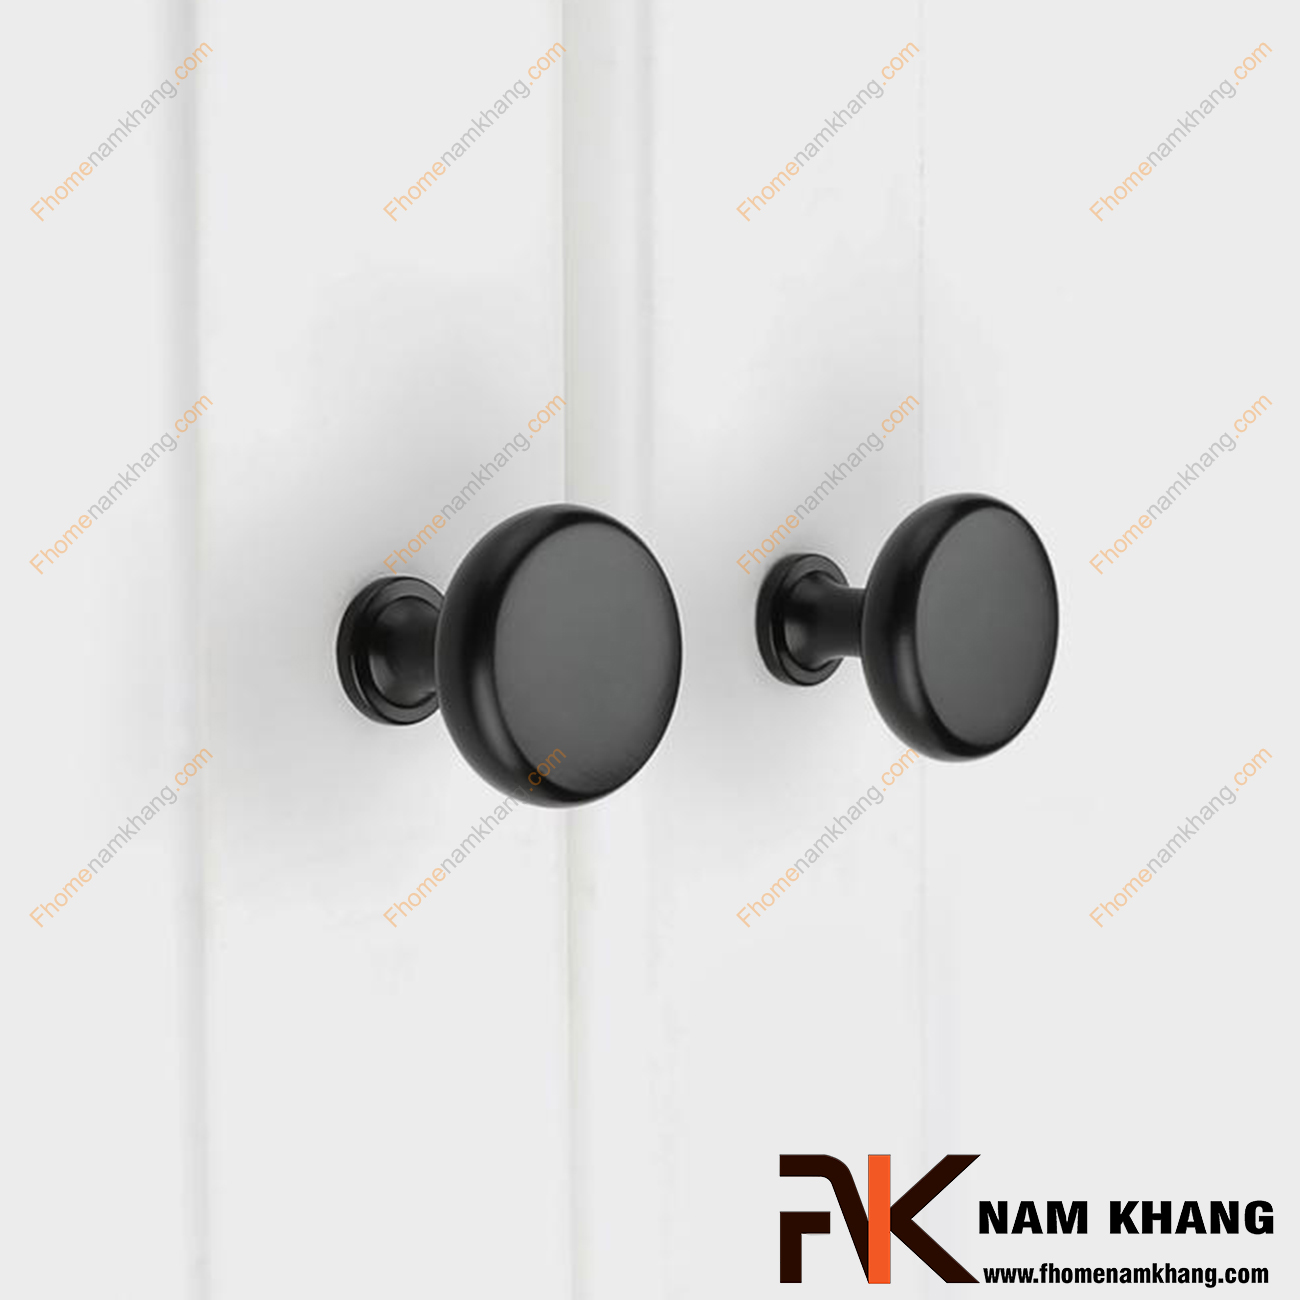 Núm cửa tủ dạng tròn màu đen mờ NK211-D - sản phẩm phụ kiện tủ nhỏ gọn thiết kế đơn giản bo tròn nhẹ nàng và sỡ hữu màu mạ mờ ấn tượng dễ dàng phối hợp.